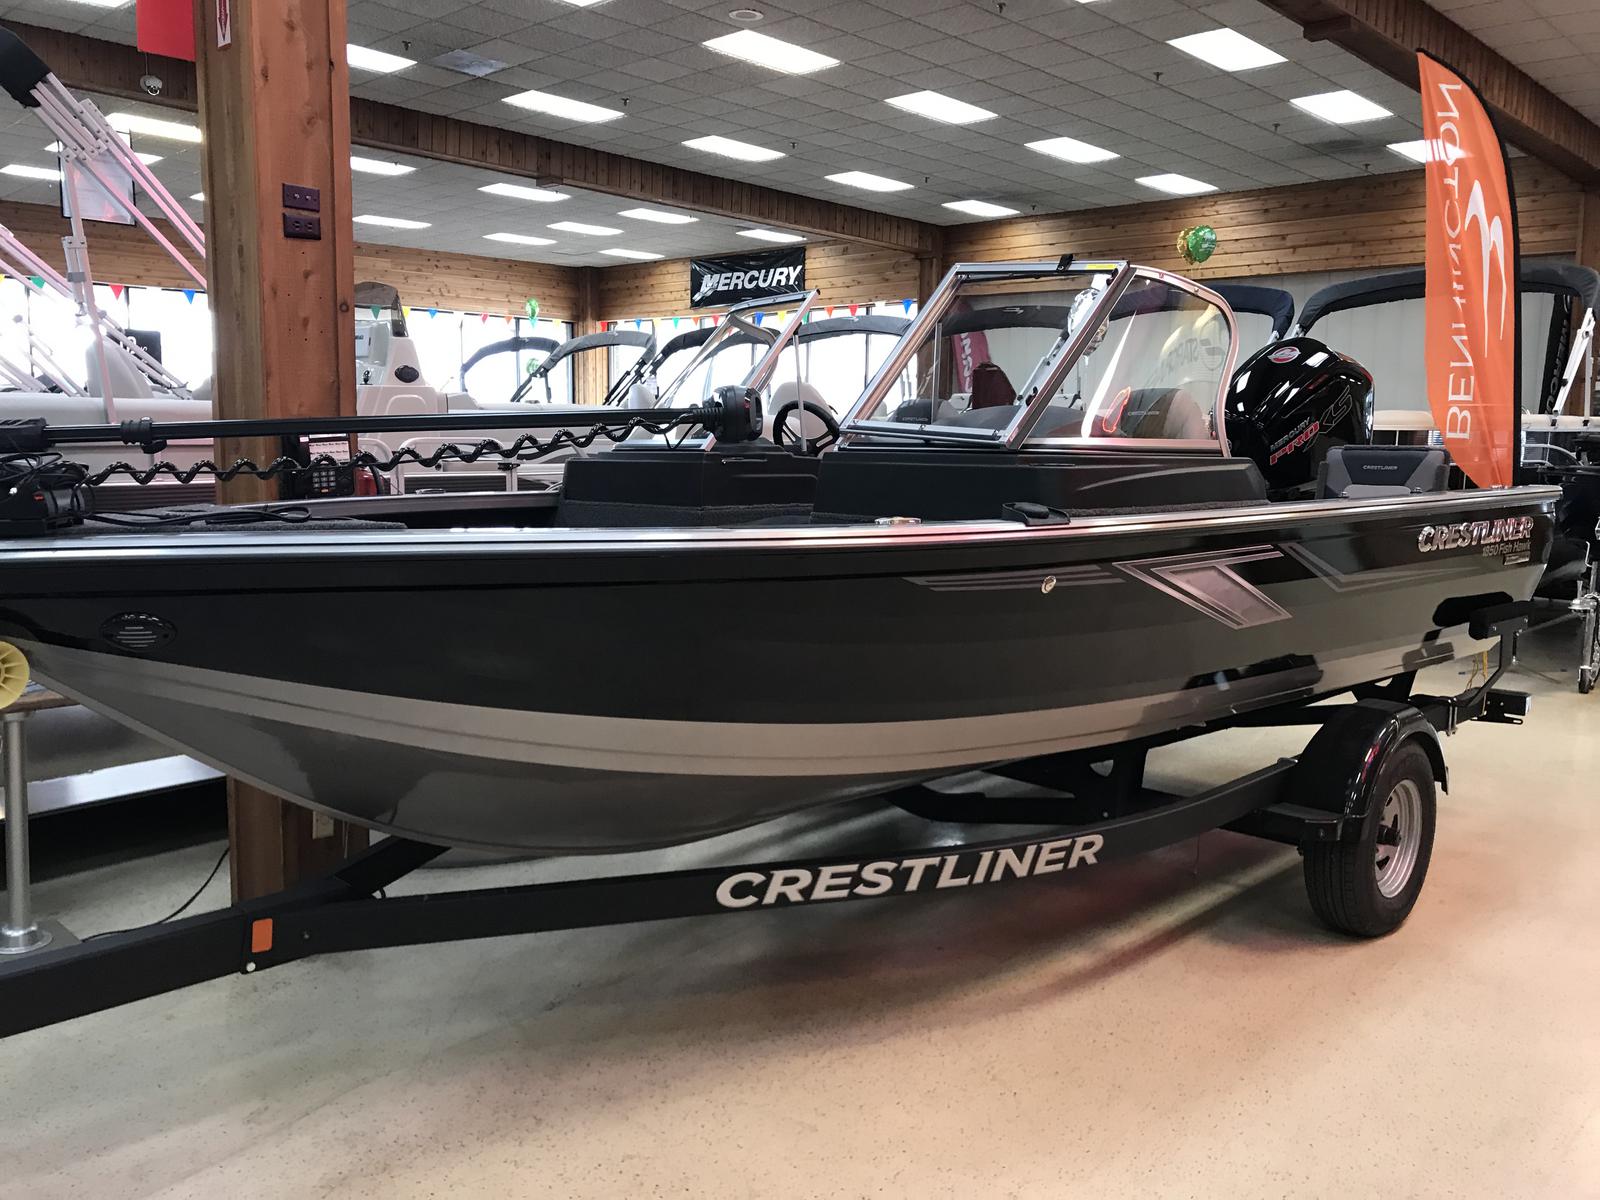 Crestliner 1850 Fish Hawk boats for sale